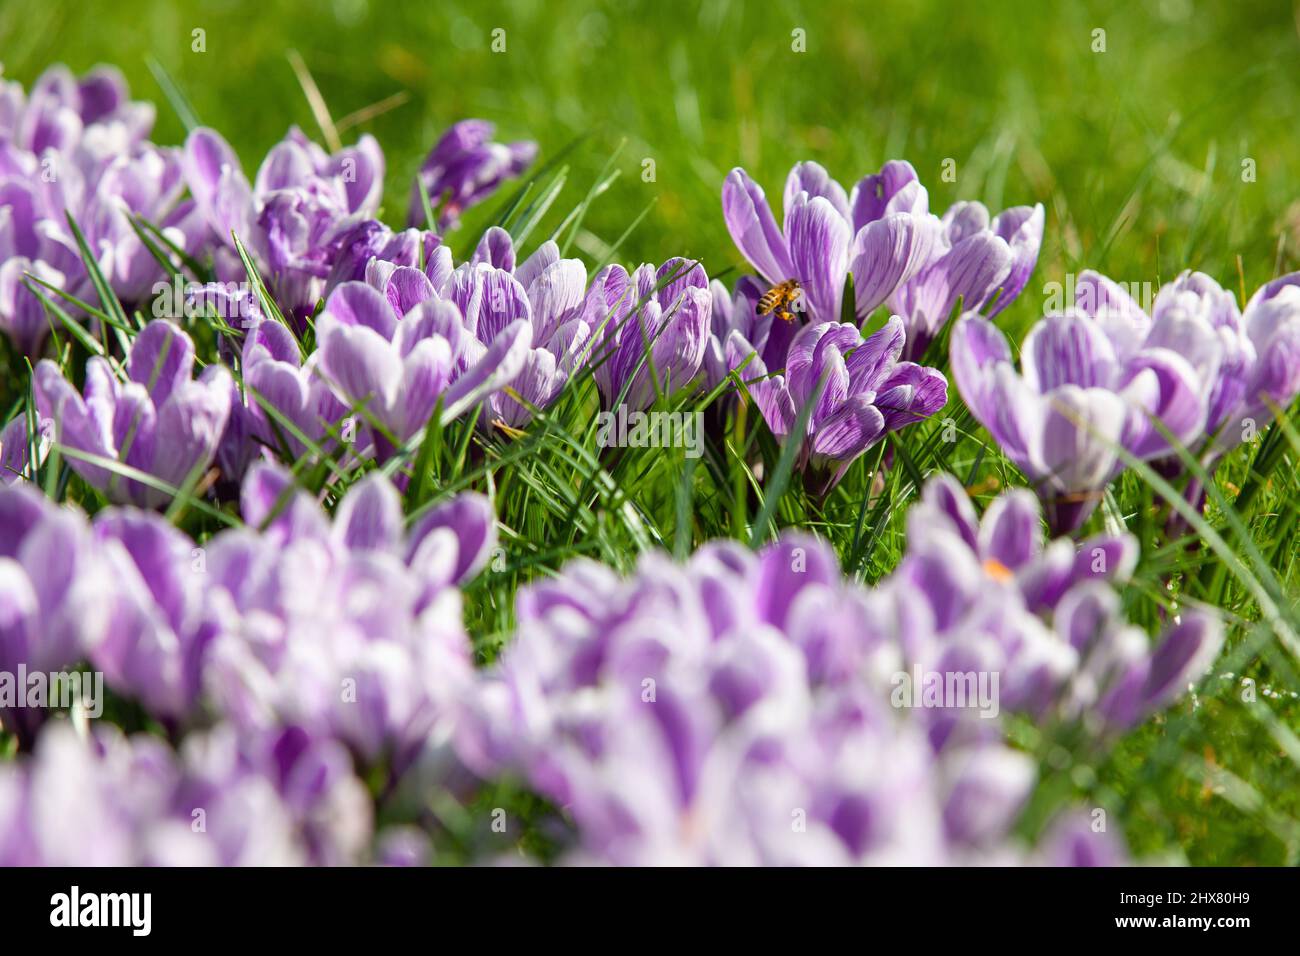 Wetter und Jahreszeiten in Großbritannien, London: Purpurne Krokusse an einem suny-Frühlingsmorgen in Clapham, im Süden Londons, locken Hummeln und andere Bestäuber an. Zehn Tage vor der Frühlings-Tagundnachtstemperaturen erreichten die Temperaturen in London über 16 grad celsius. Anna Watson/Alamy Live News Stockfoto